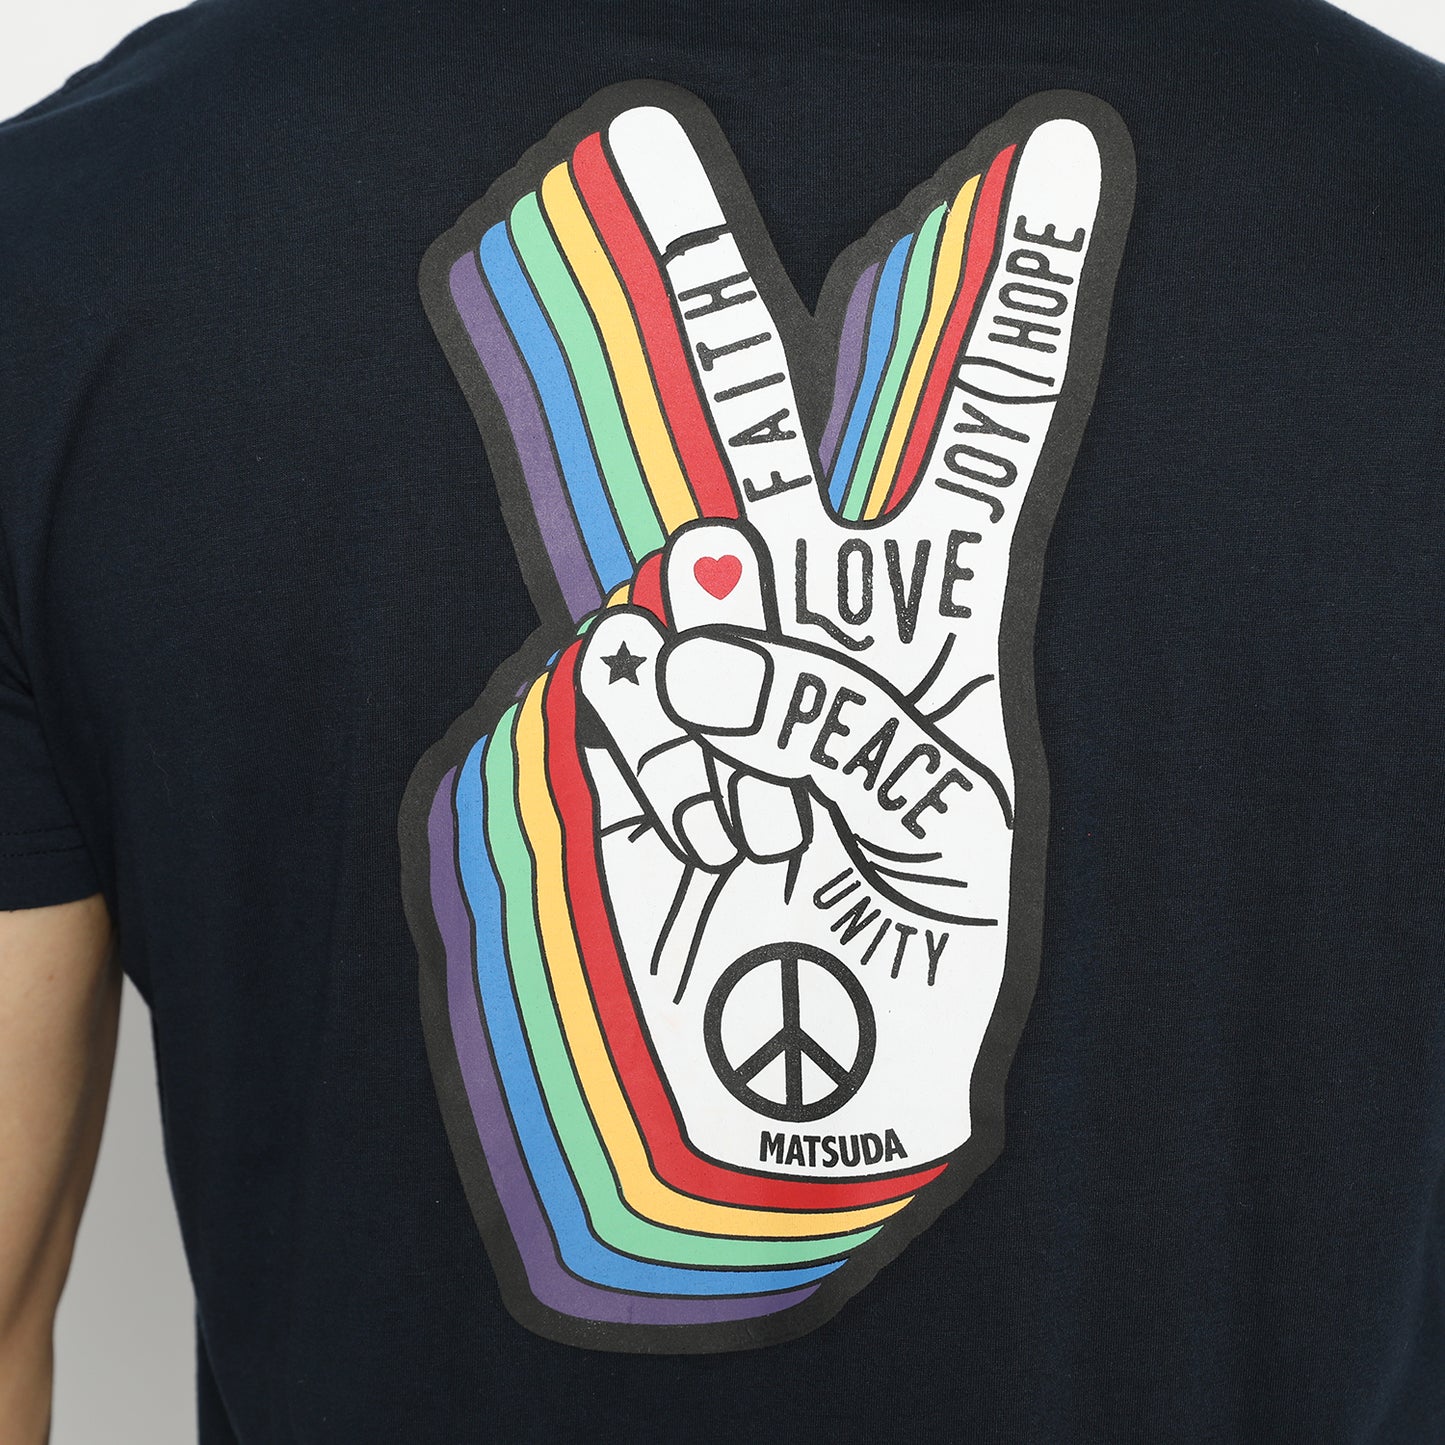 MATSUDA Kaos T shirt Date Peace